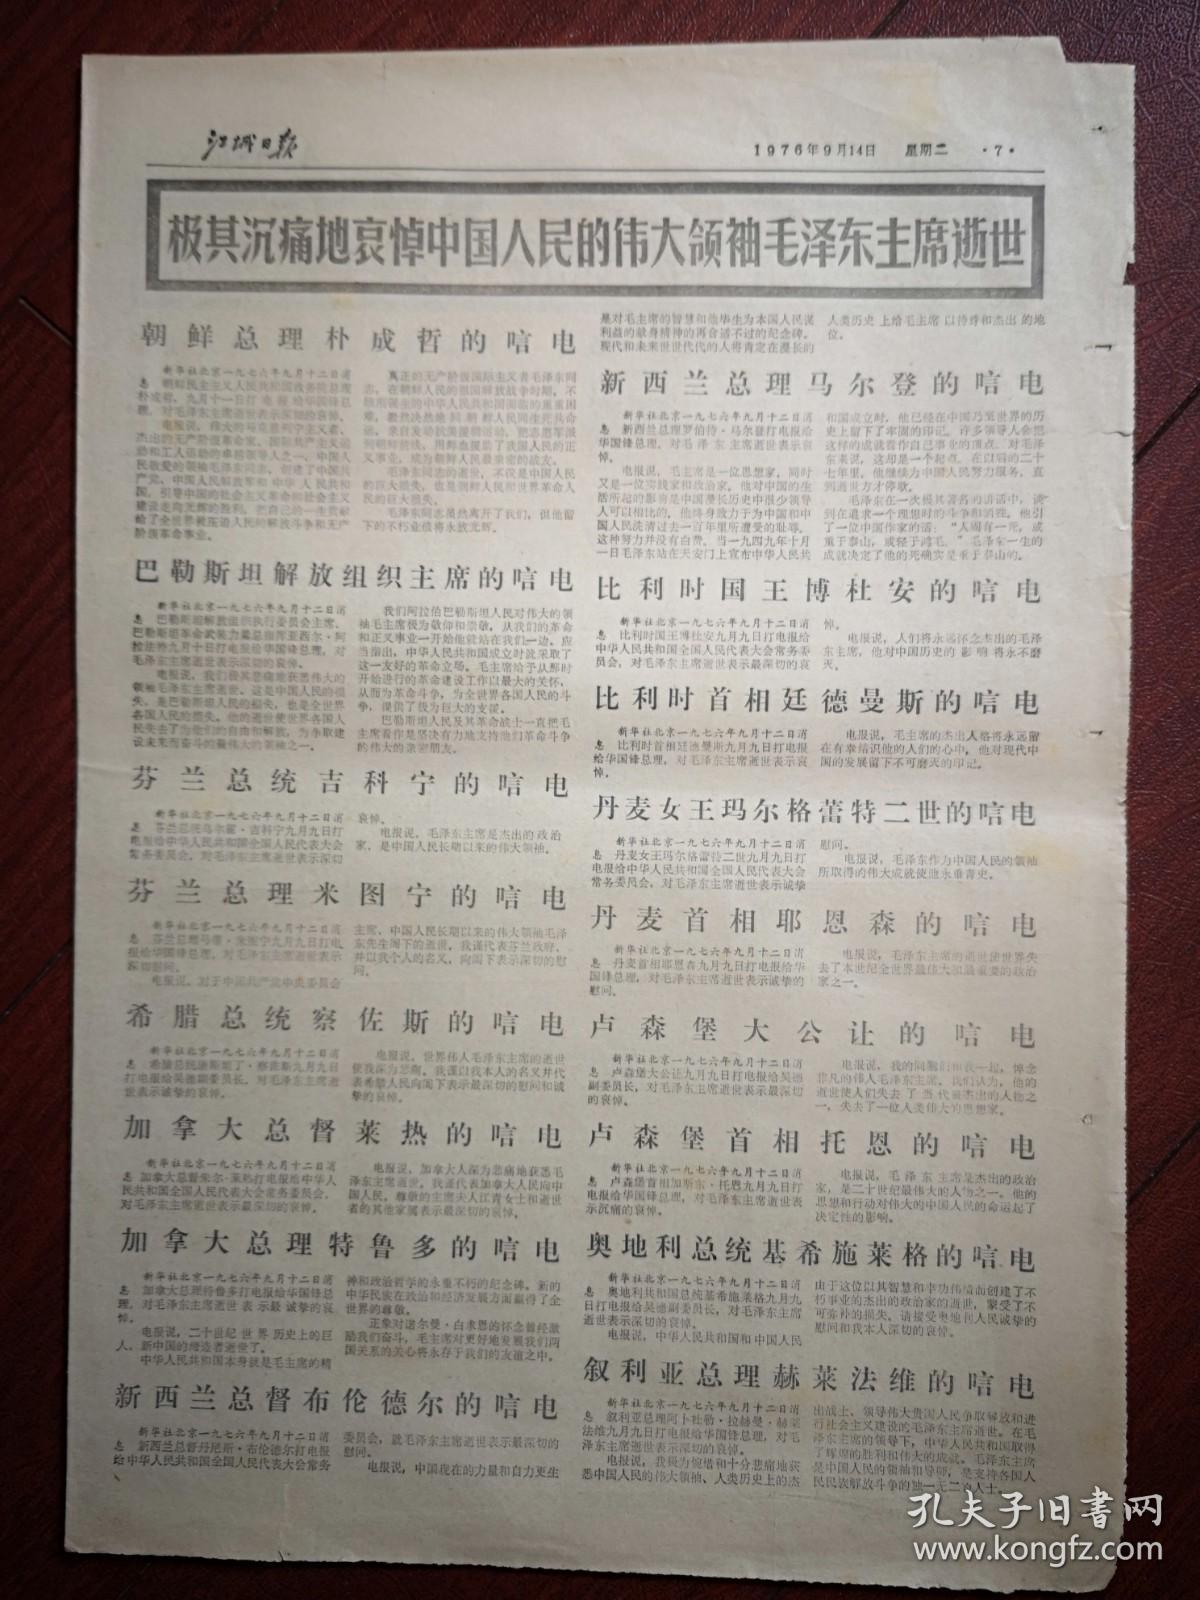 江城日报（吉林市）1976年9月14日，吉林市人民悼念毛主席，各国唁电（详见说明）